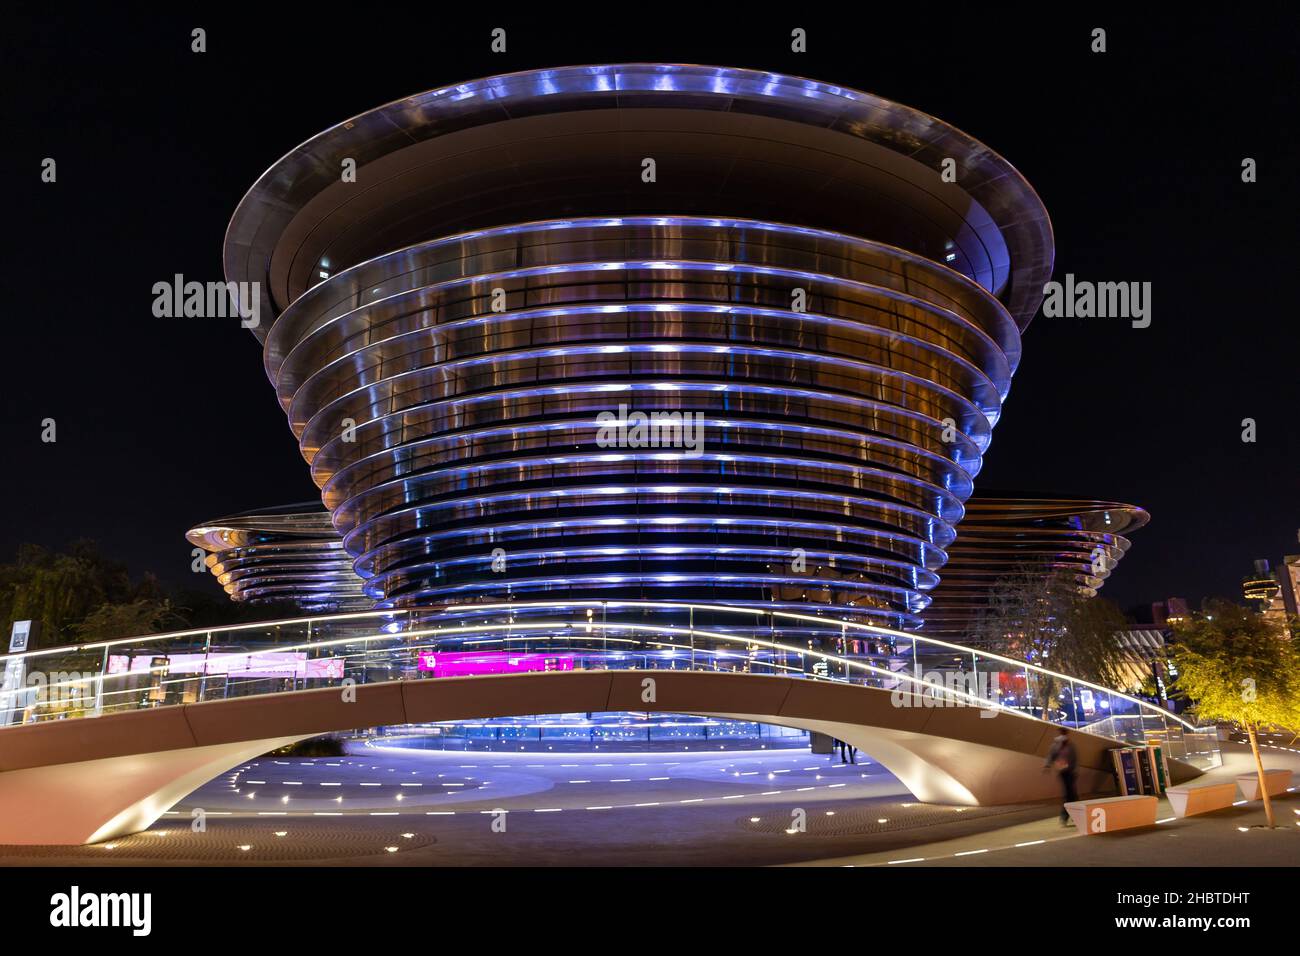 Dubai, VAE, 09.12.2021. Alif - The Mobility Pavilion auf der Expo 2020 Dubai, modernes Gebäude, symmetrische Aussicht, nachts beleuchtet. Stockfoto